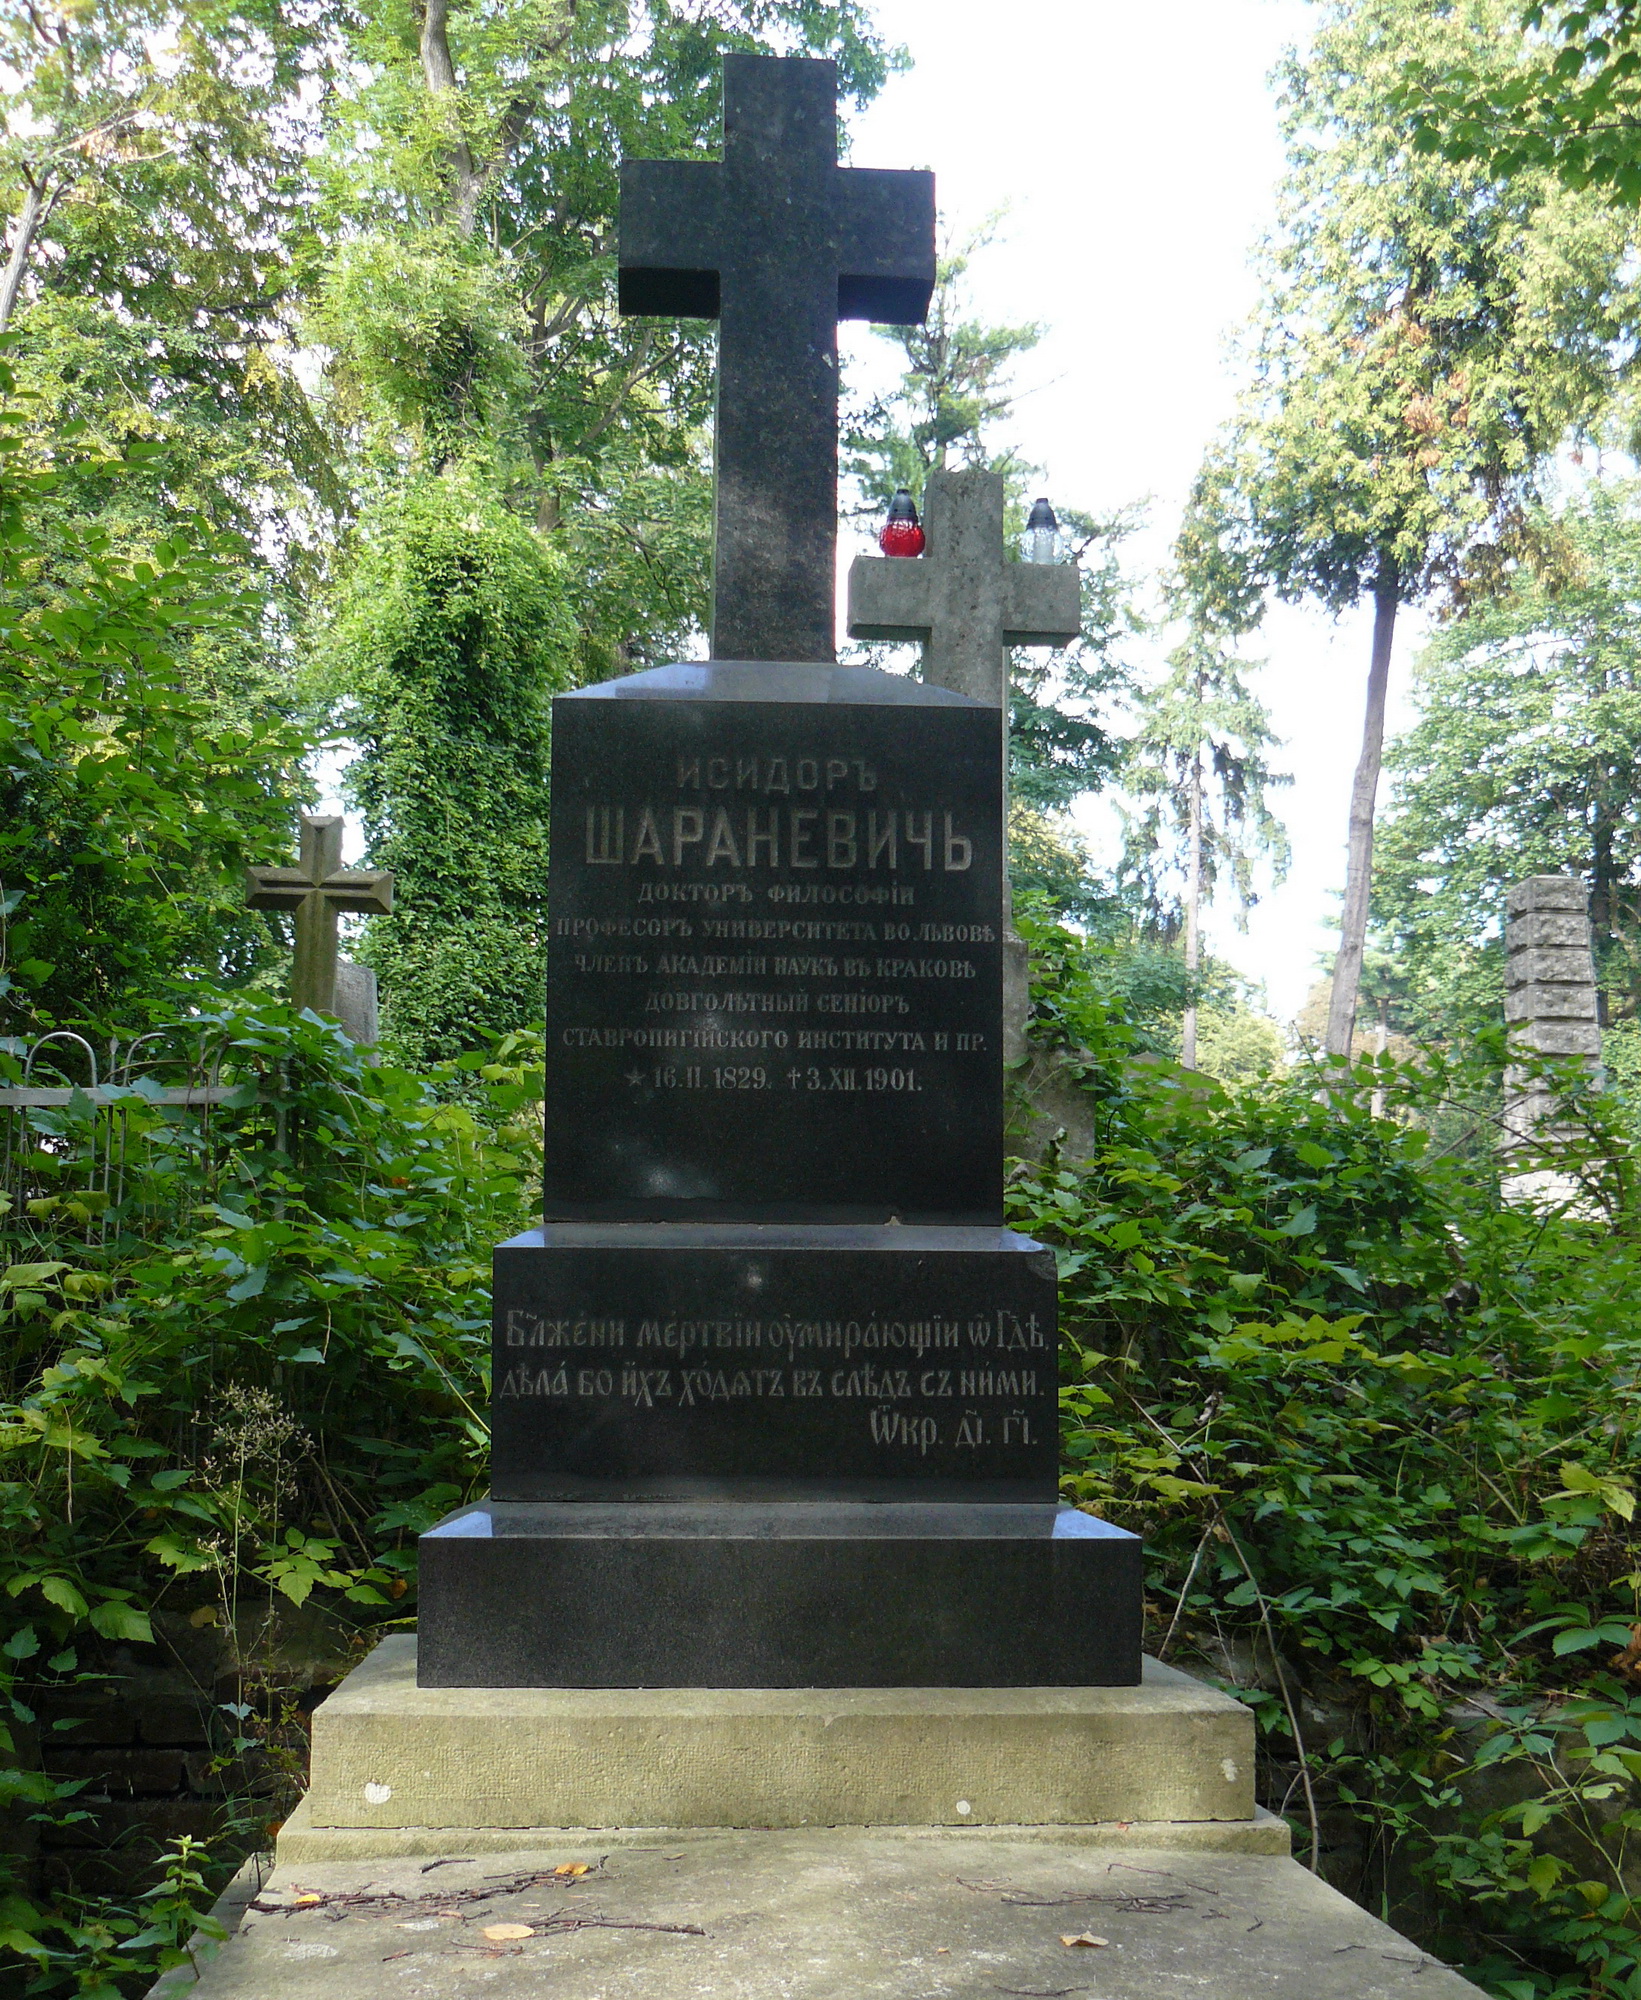  Фото № 10. Надгробие Исидора Шараневича   (для максимального увеличения нажмите квадратик со стрелкой).